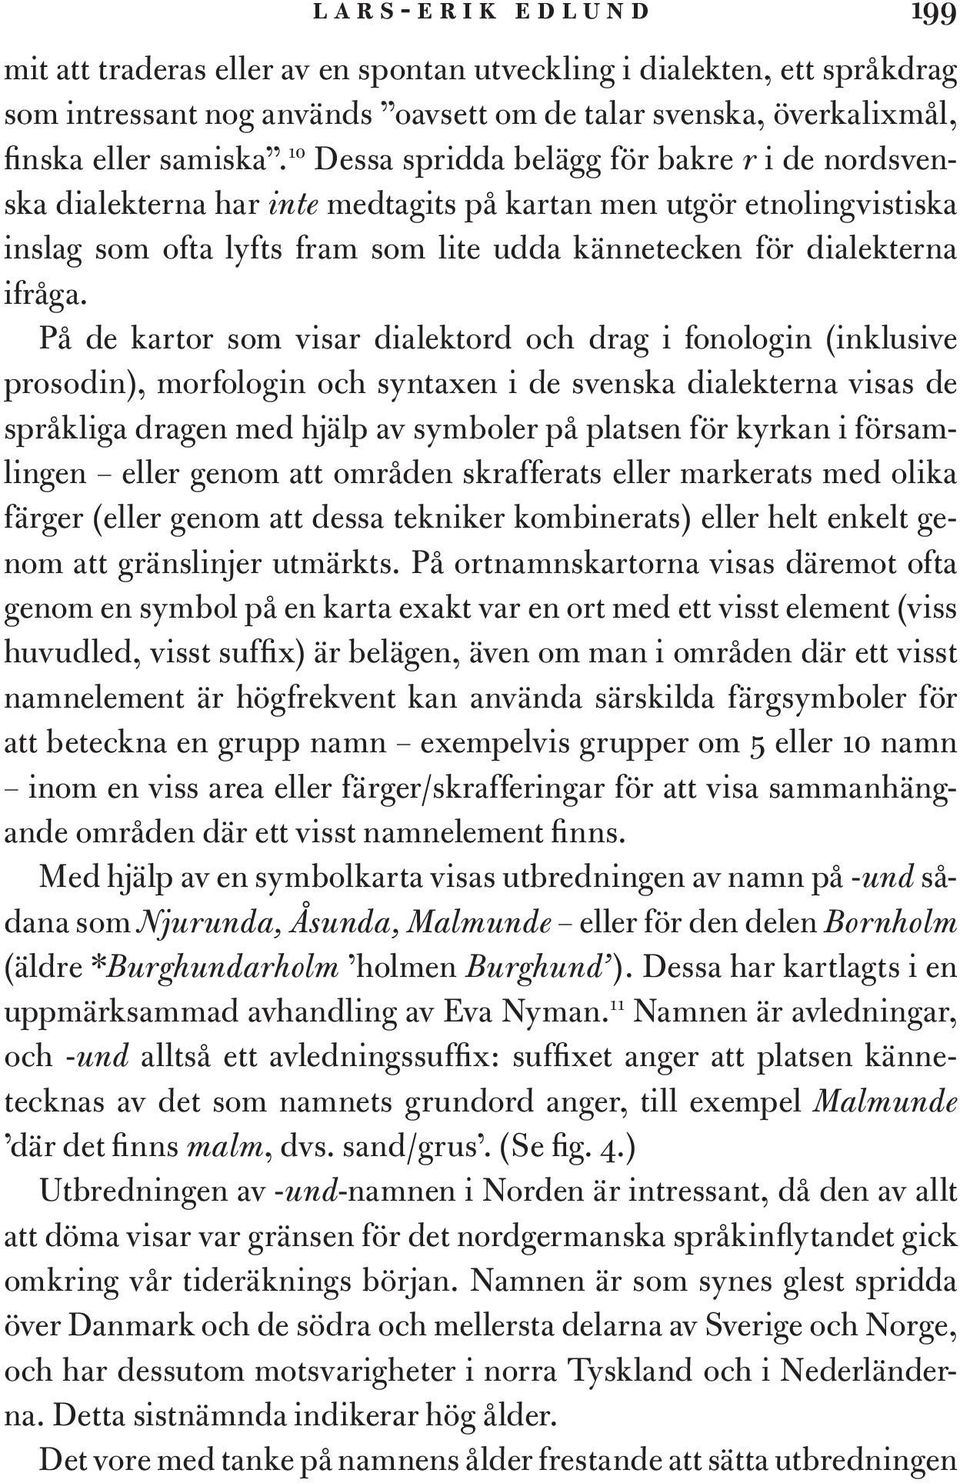 På de kartor som visar dialektord och drag i fonologin (inklusive prosodin), morfologin och syntaxen i de svenska dialekterna visas de språkliga dragen med hjälp av symboler på platsen för kyrkan i